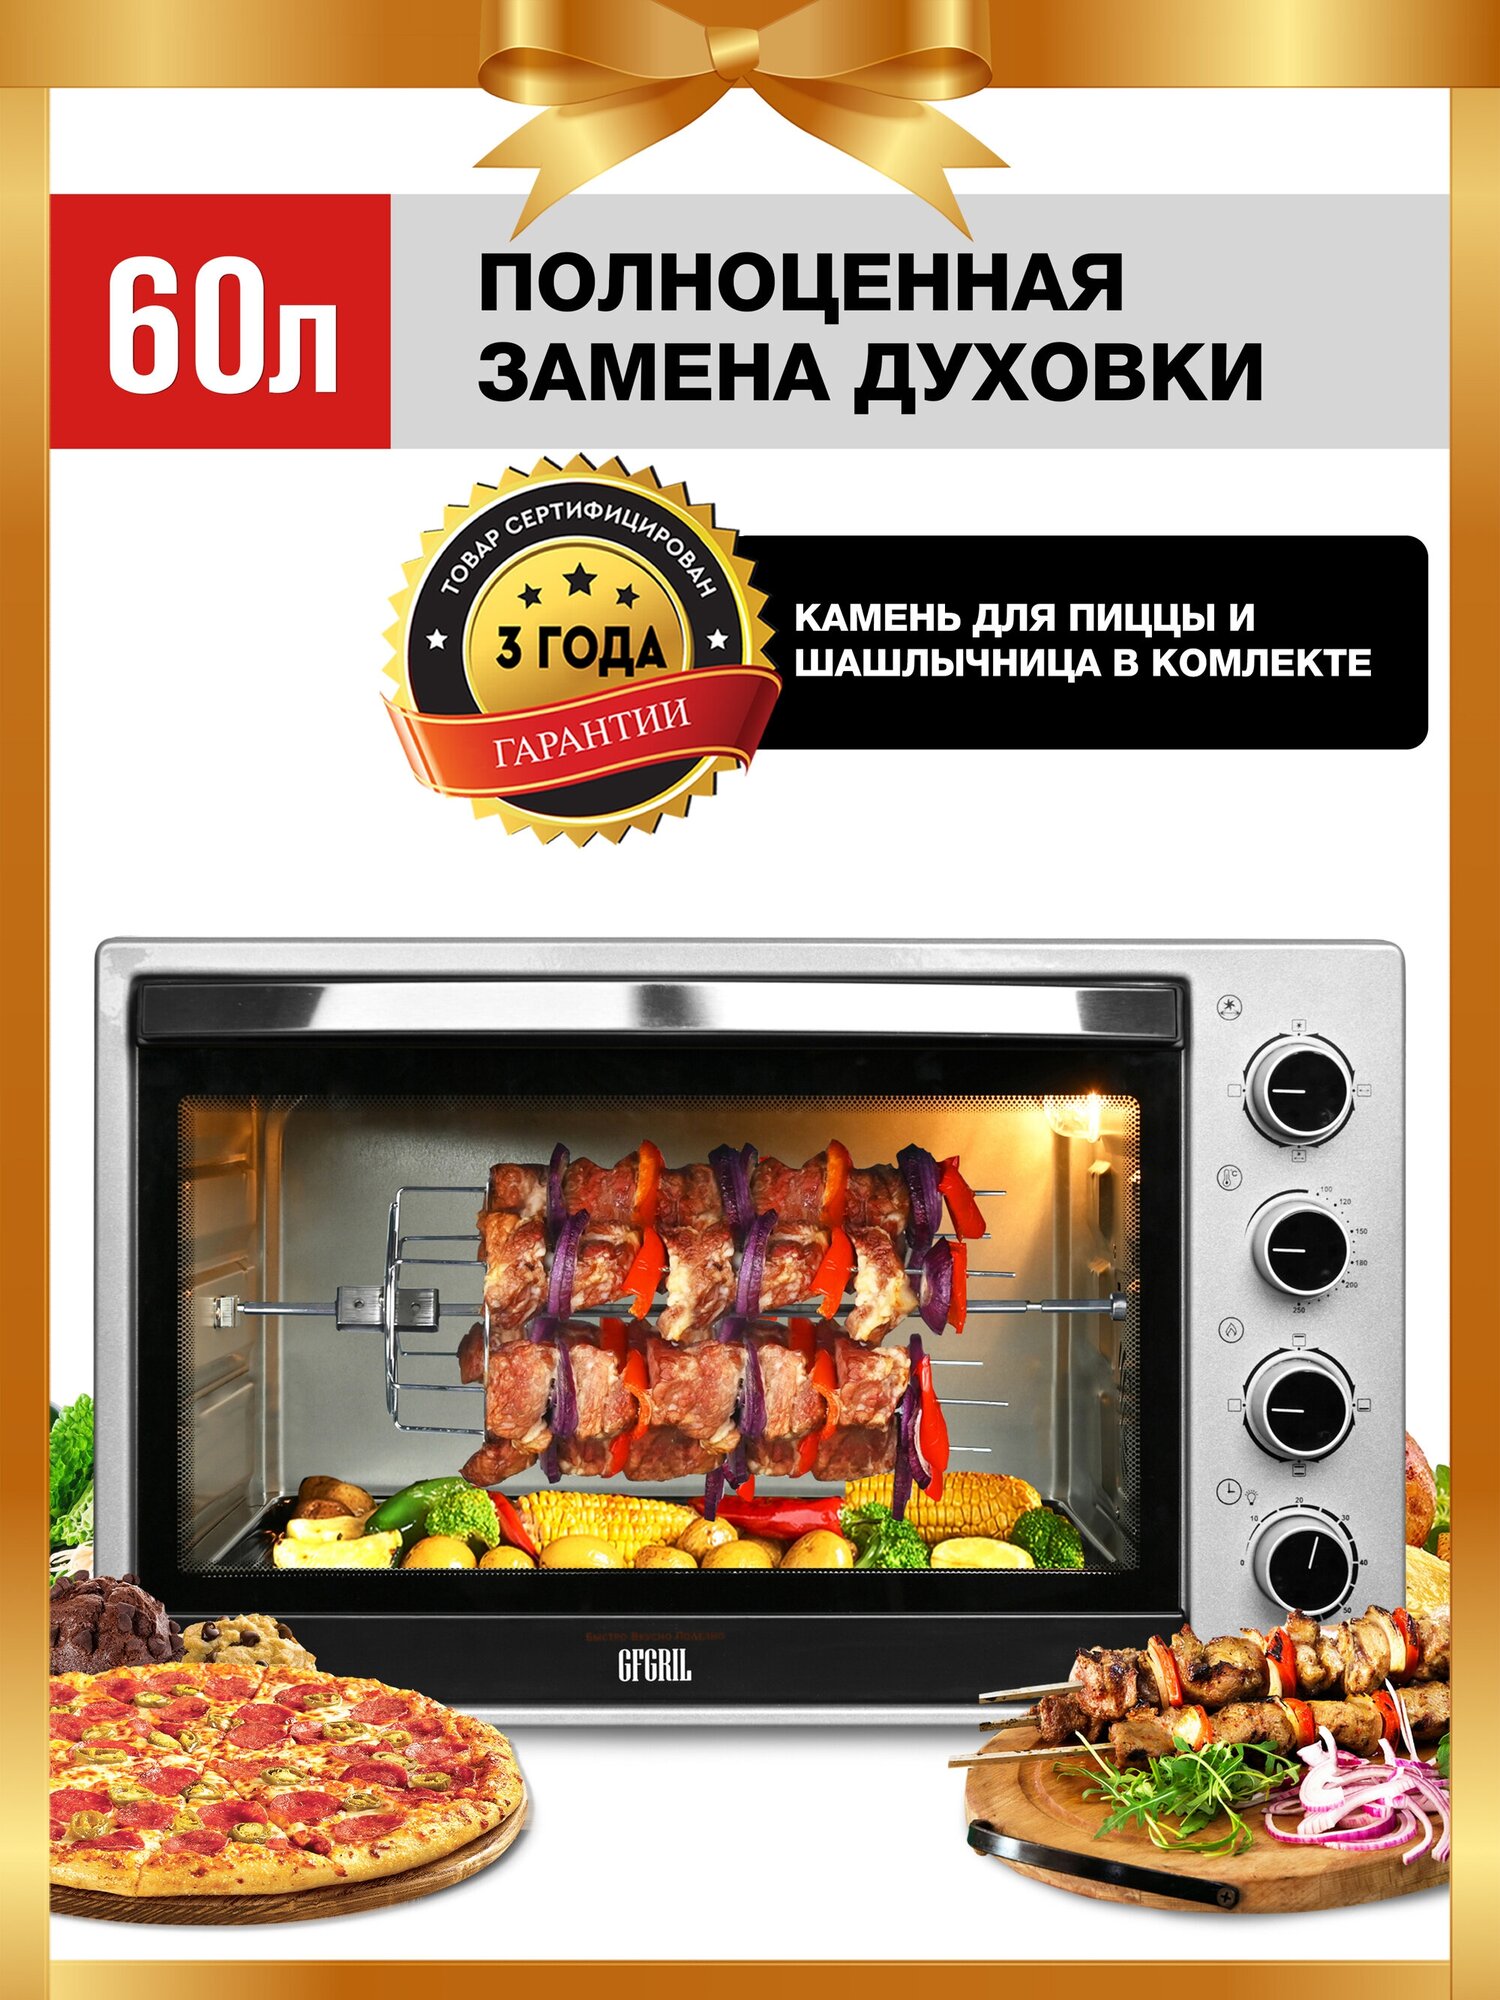 GFGRIL духовой шкаф GFO-60, электрическая печь объемом 60л, мини печь с конвекцией, гриль — купить в интернет-магазине по низкой цене на Яндекс Маркете